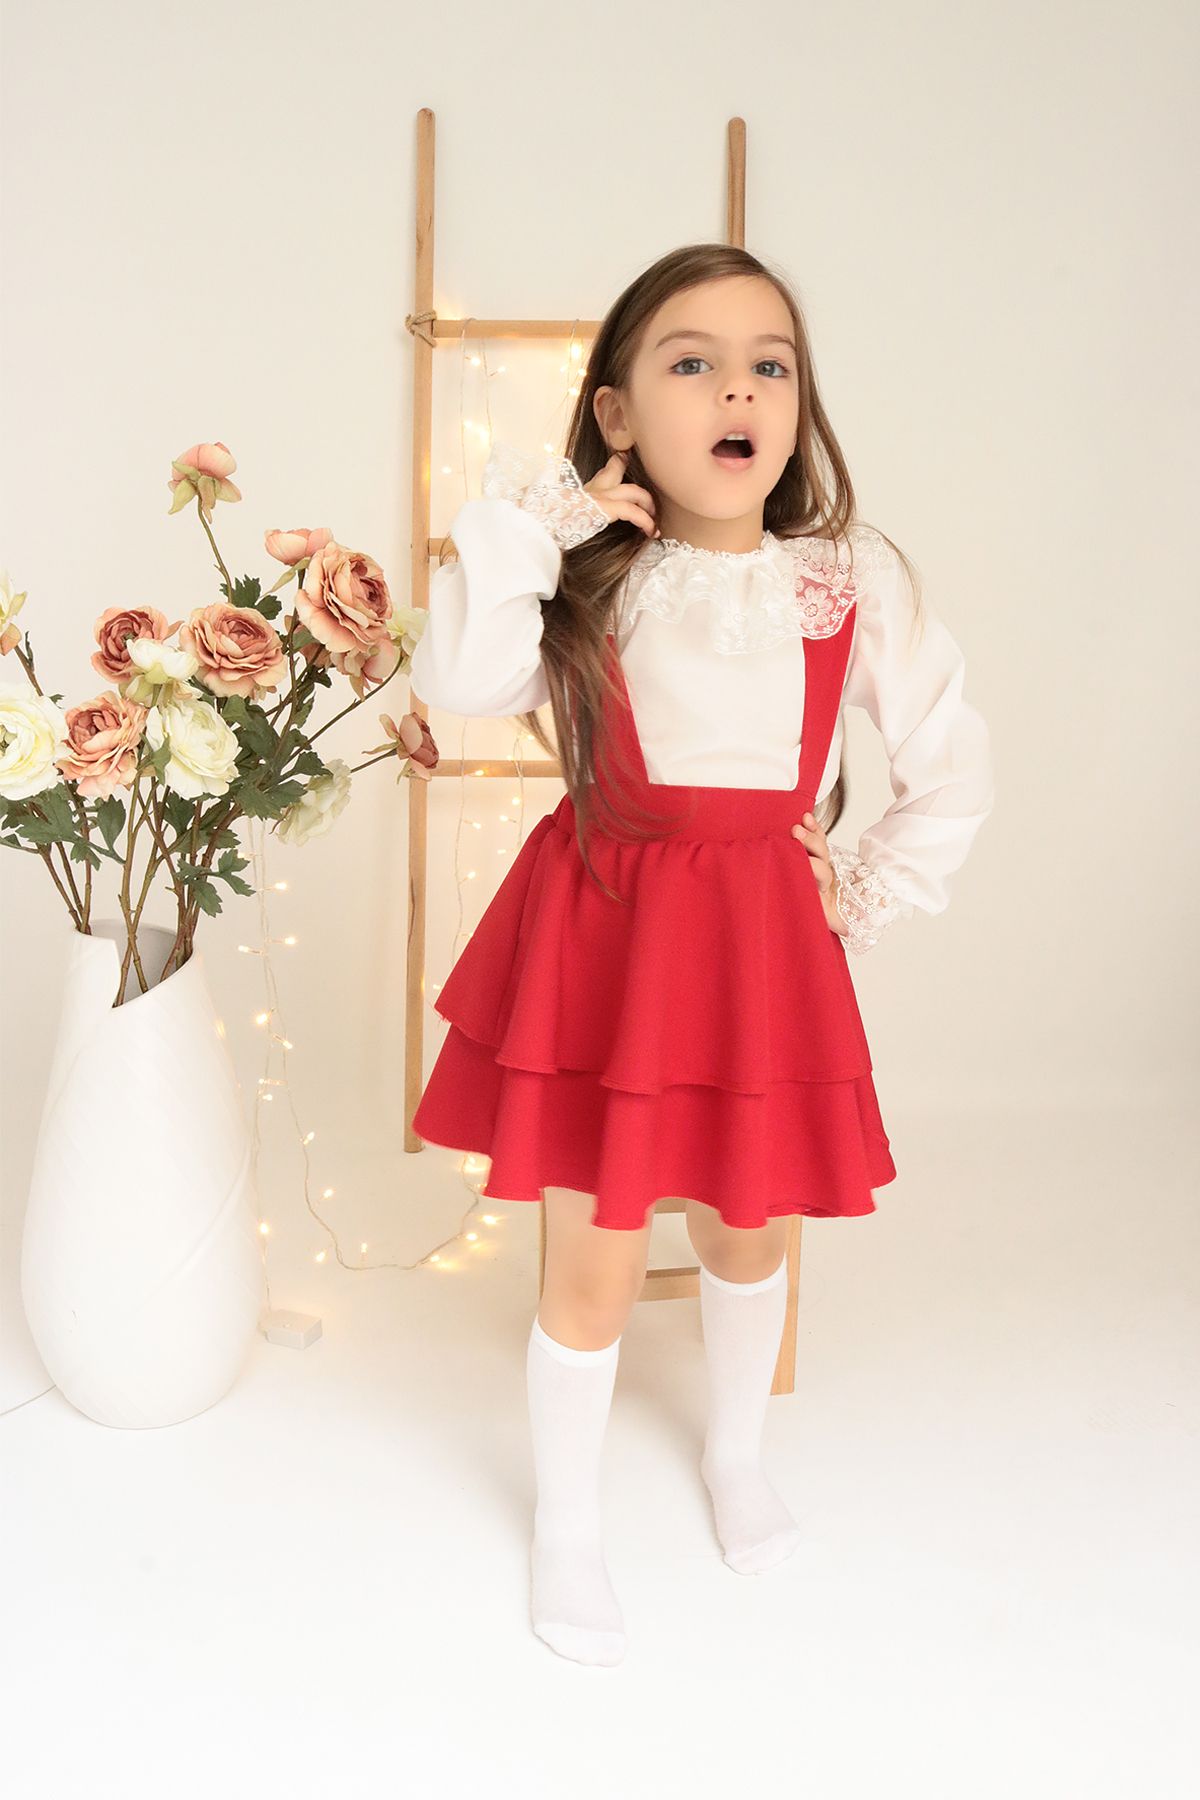 Parla Kids Kız Çocuk Helen Kırmızı Askılı Bağlama Jile 23 Nisan Elbise Dantel Detay Uzun Kollu Bluz Abiye Takım